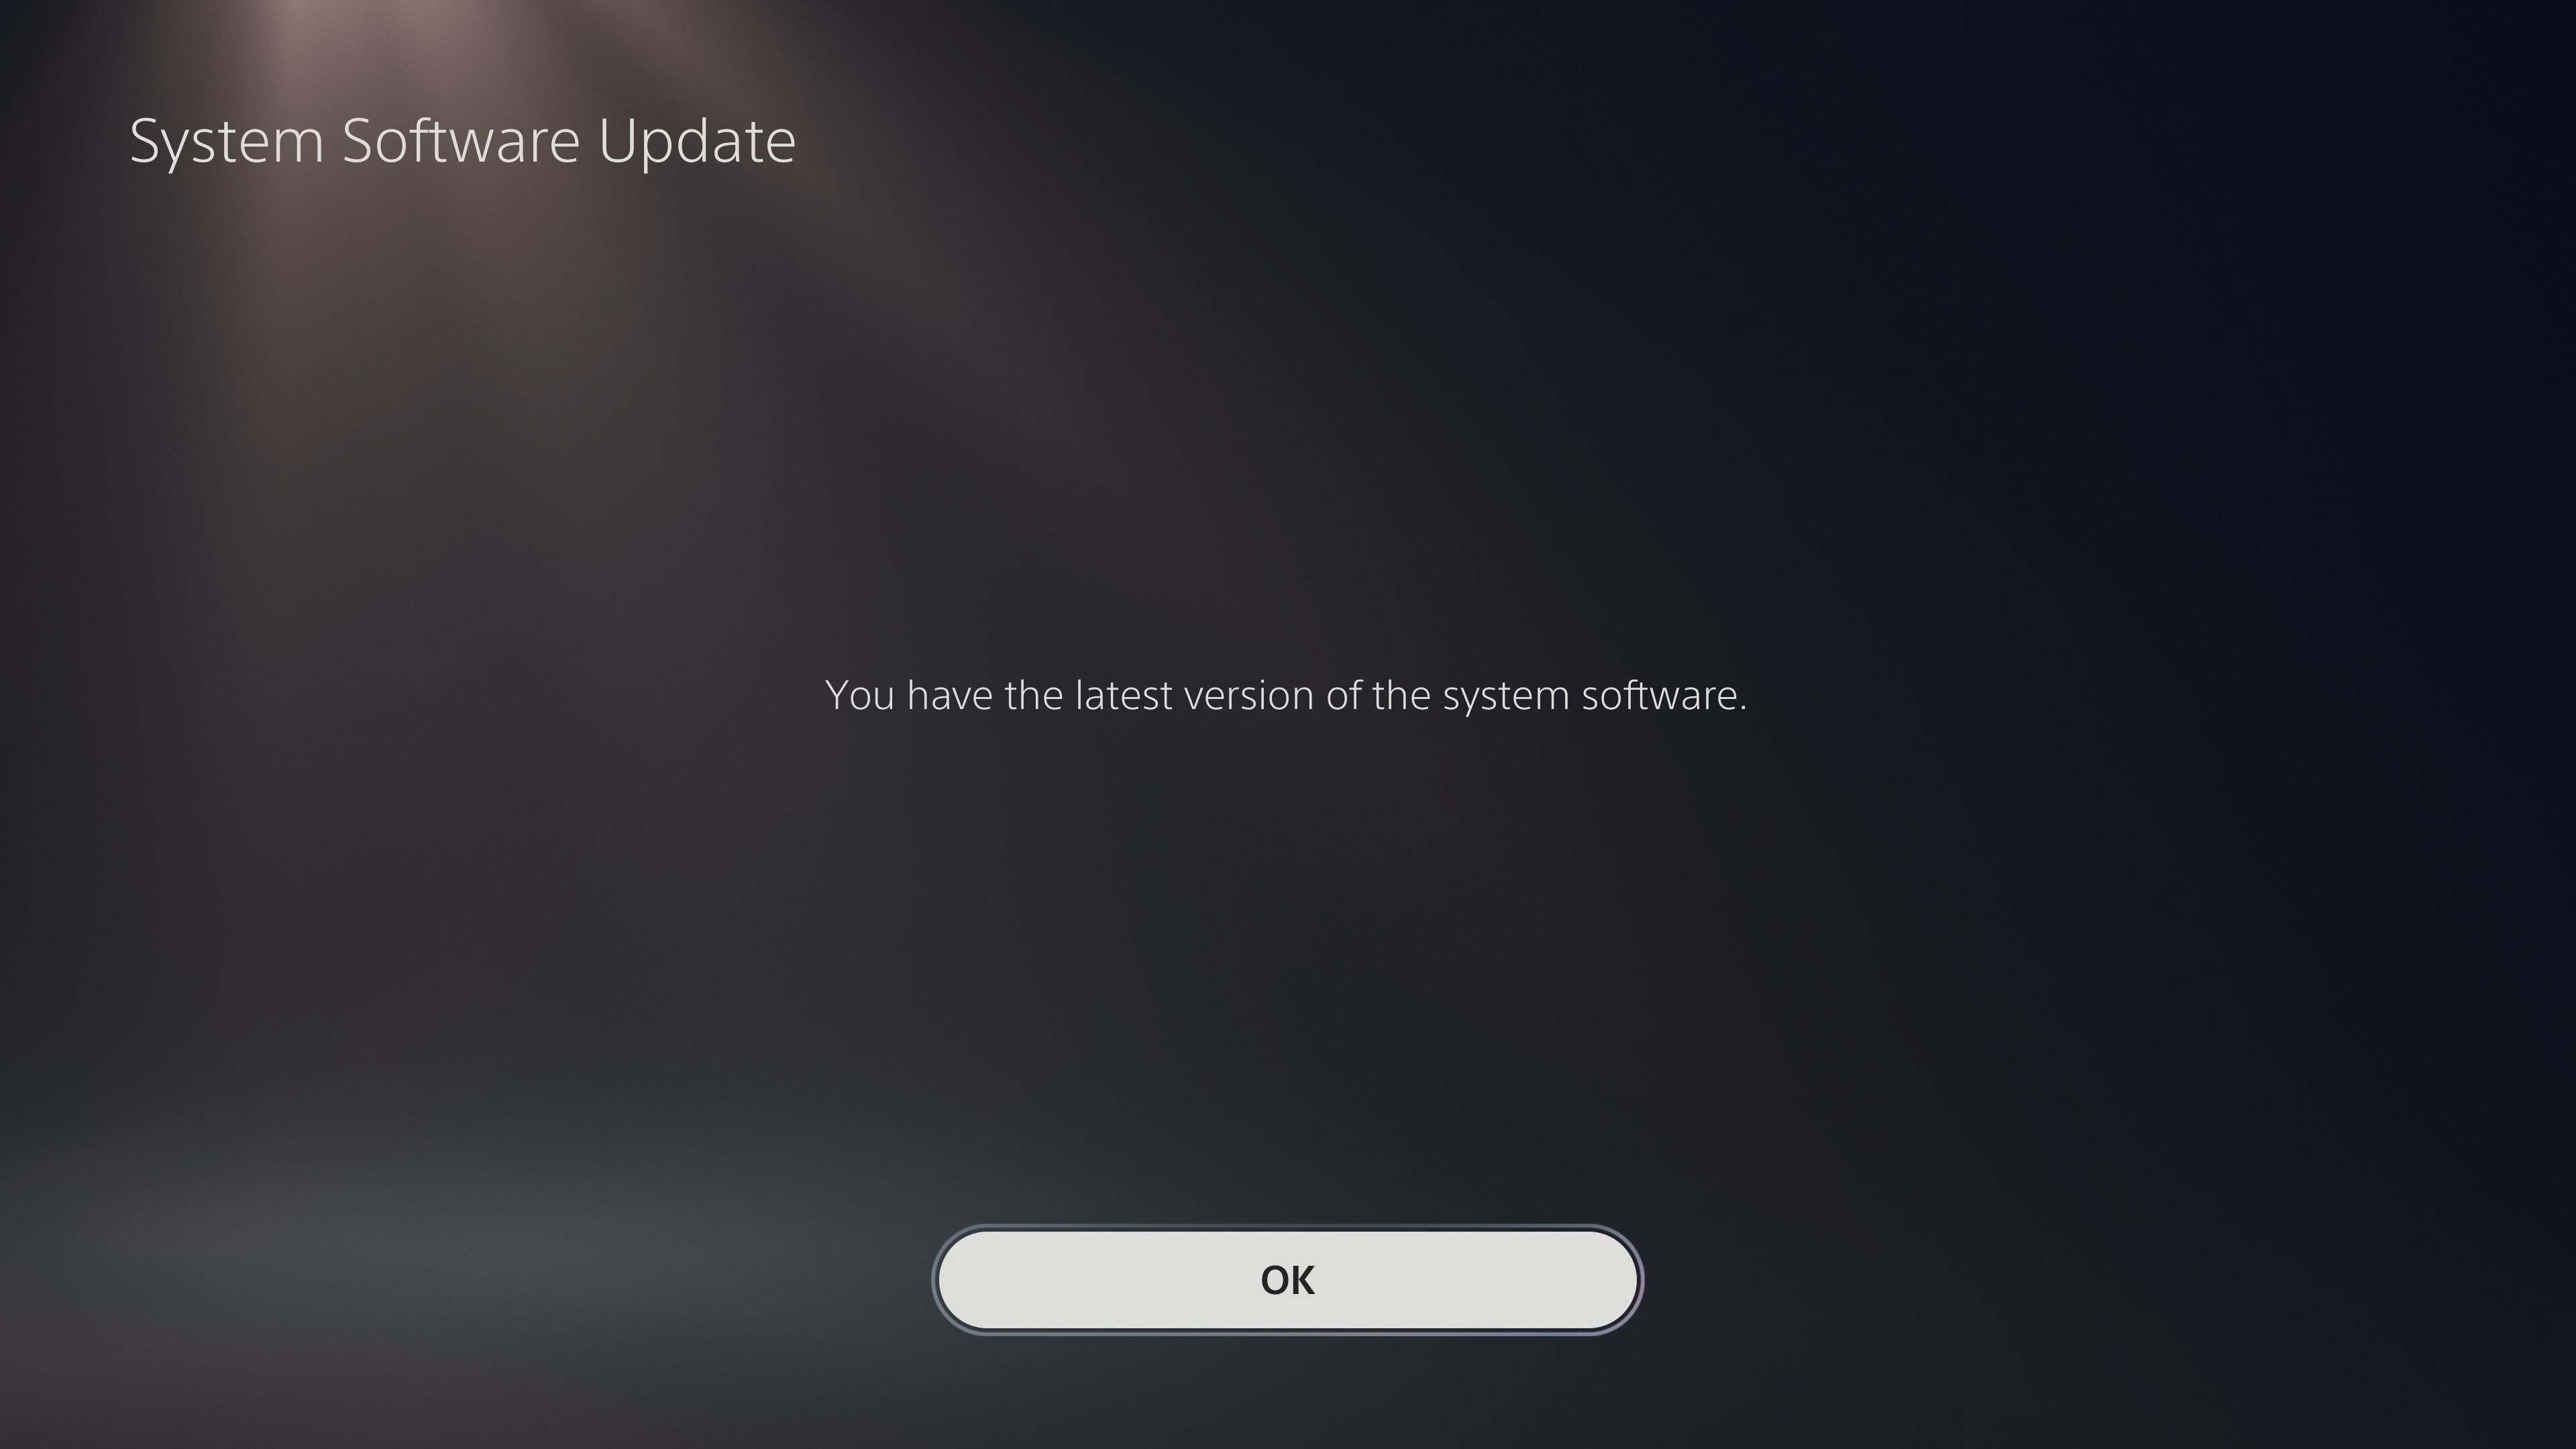 PS5 Latest Software Installed - Come aggiornare la tua PlayStation 5